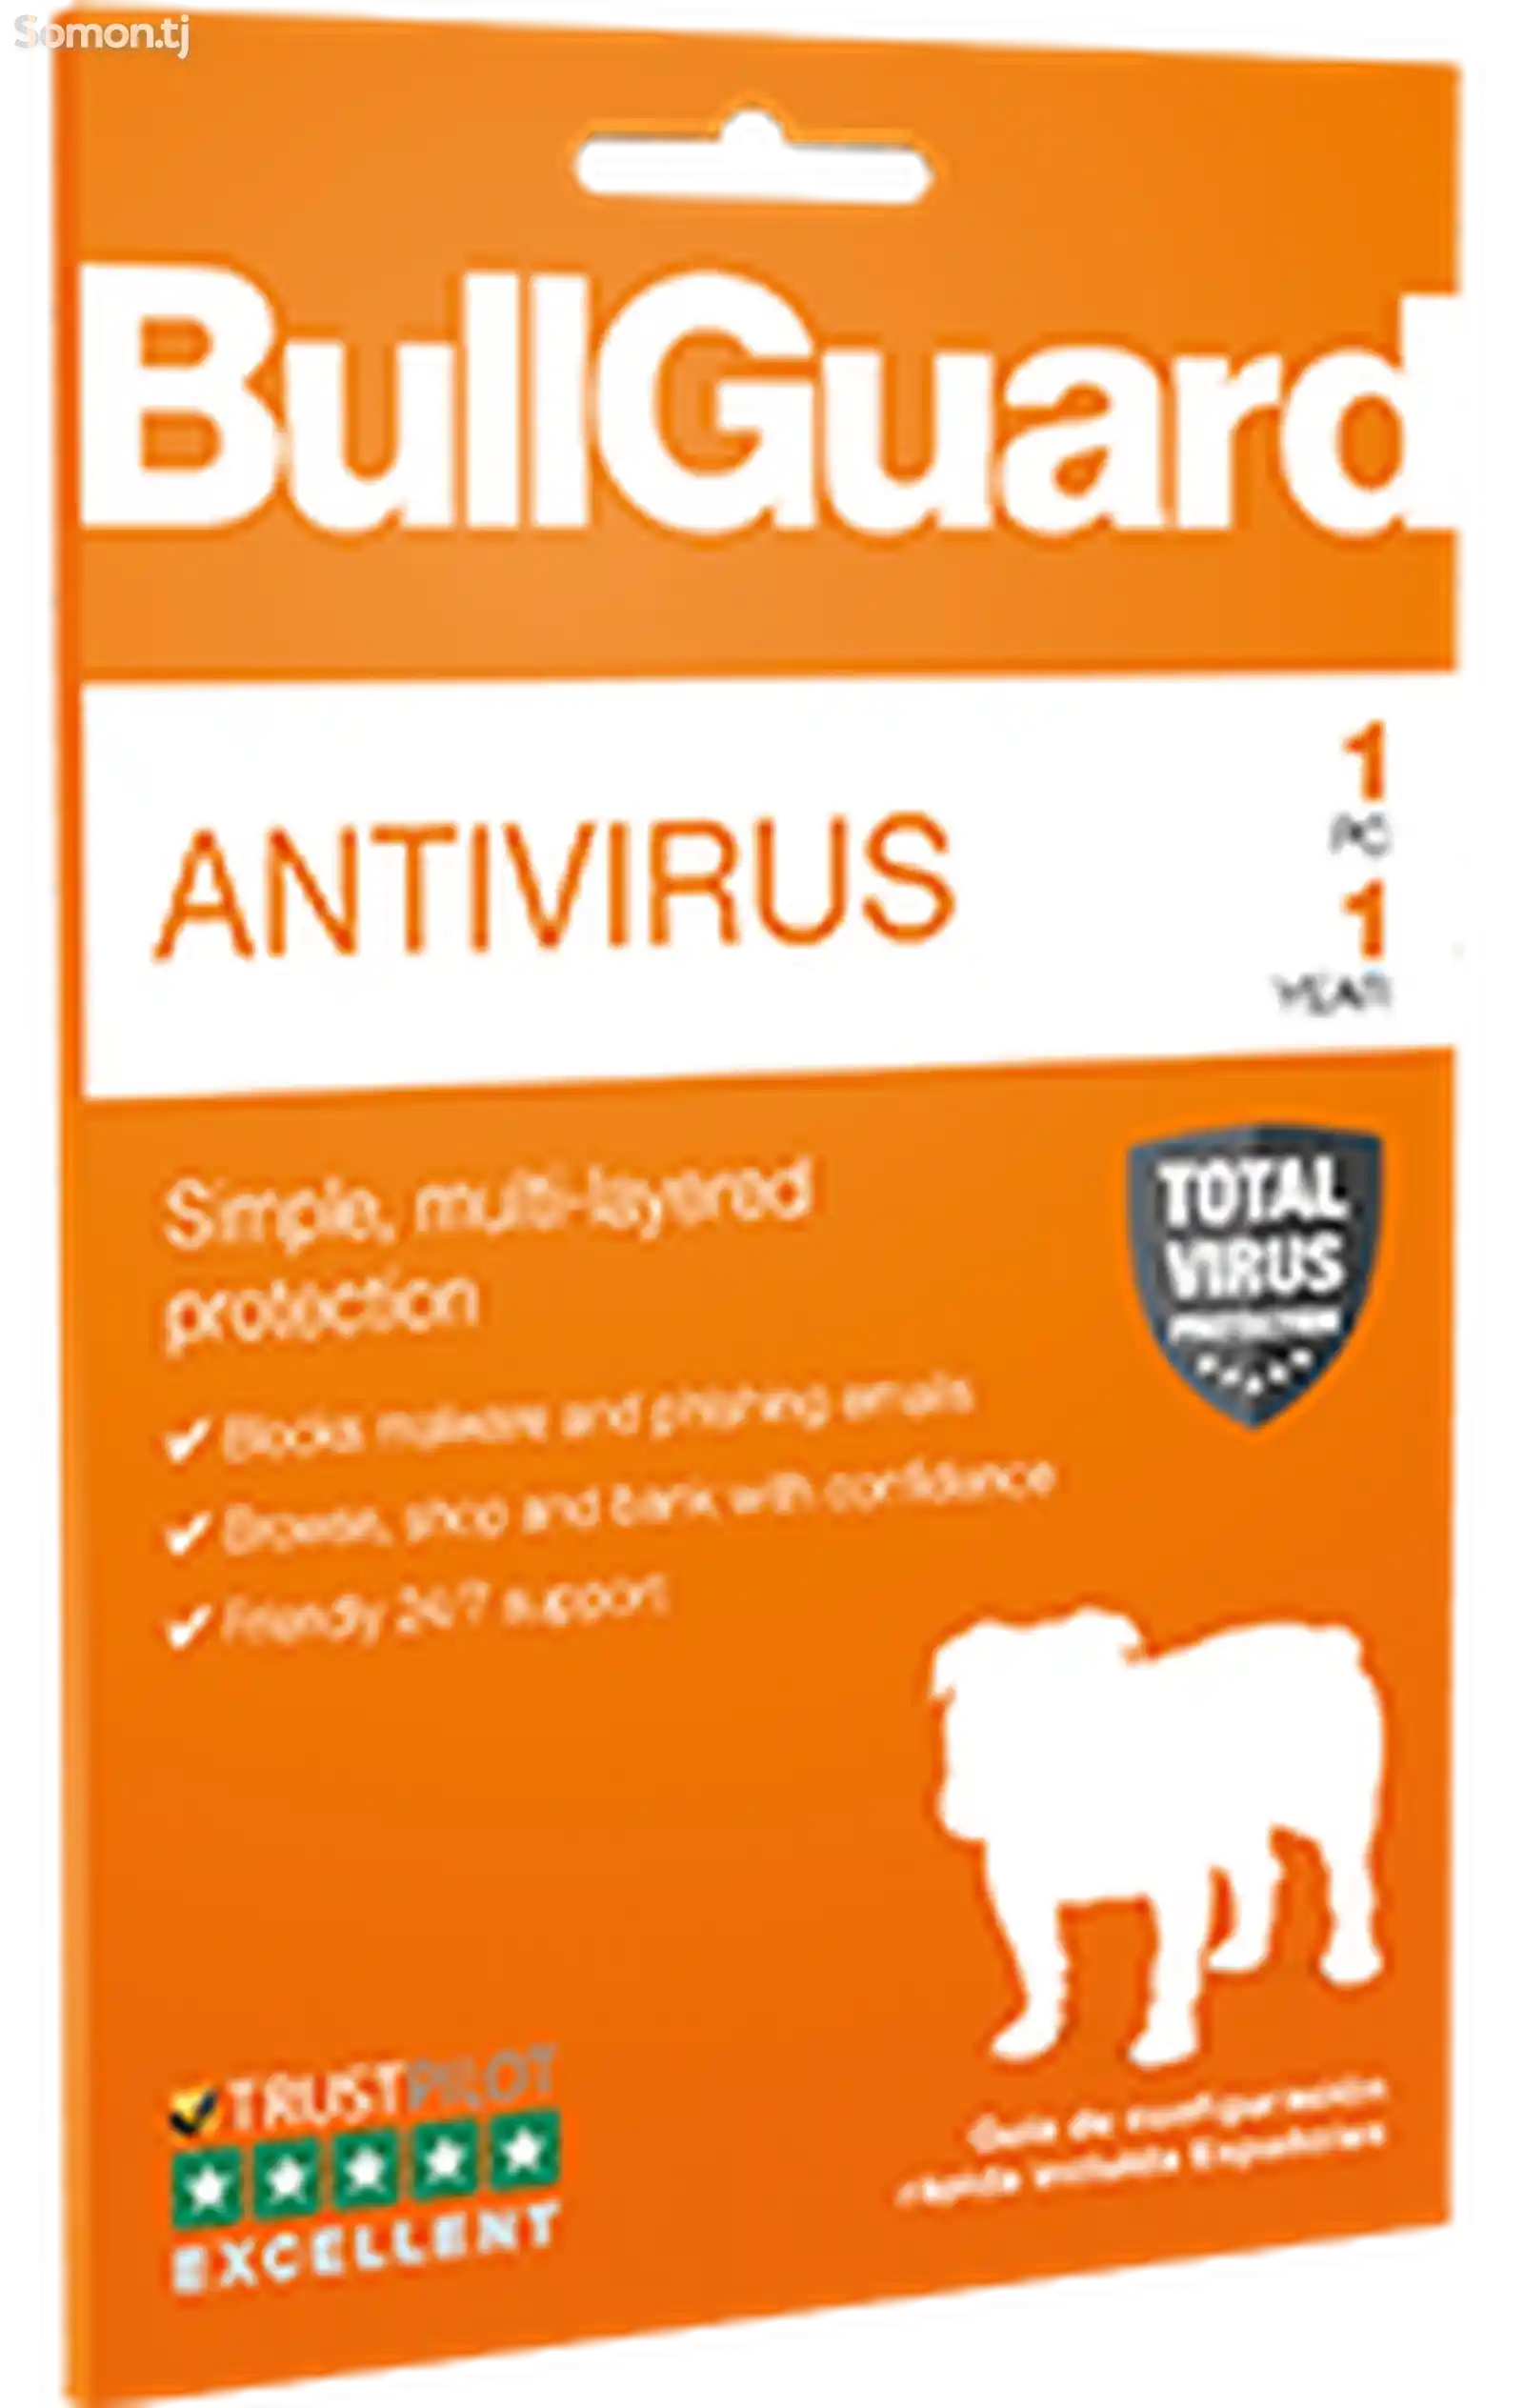 BullGuard Antivirus - иҷозатнома барои 3 роёна, 1 сол